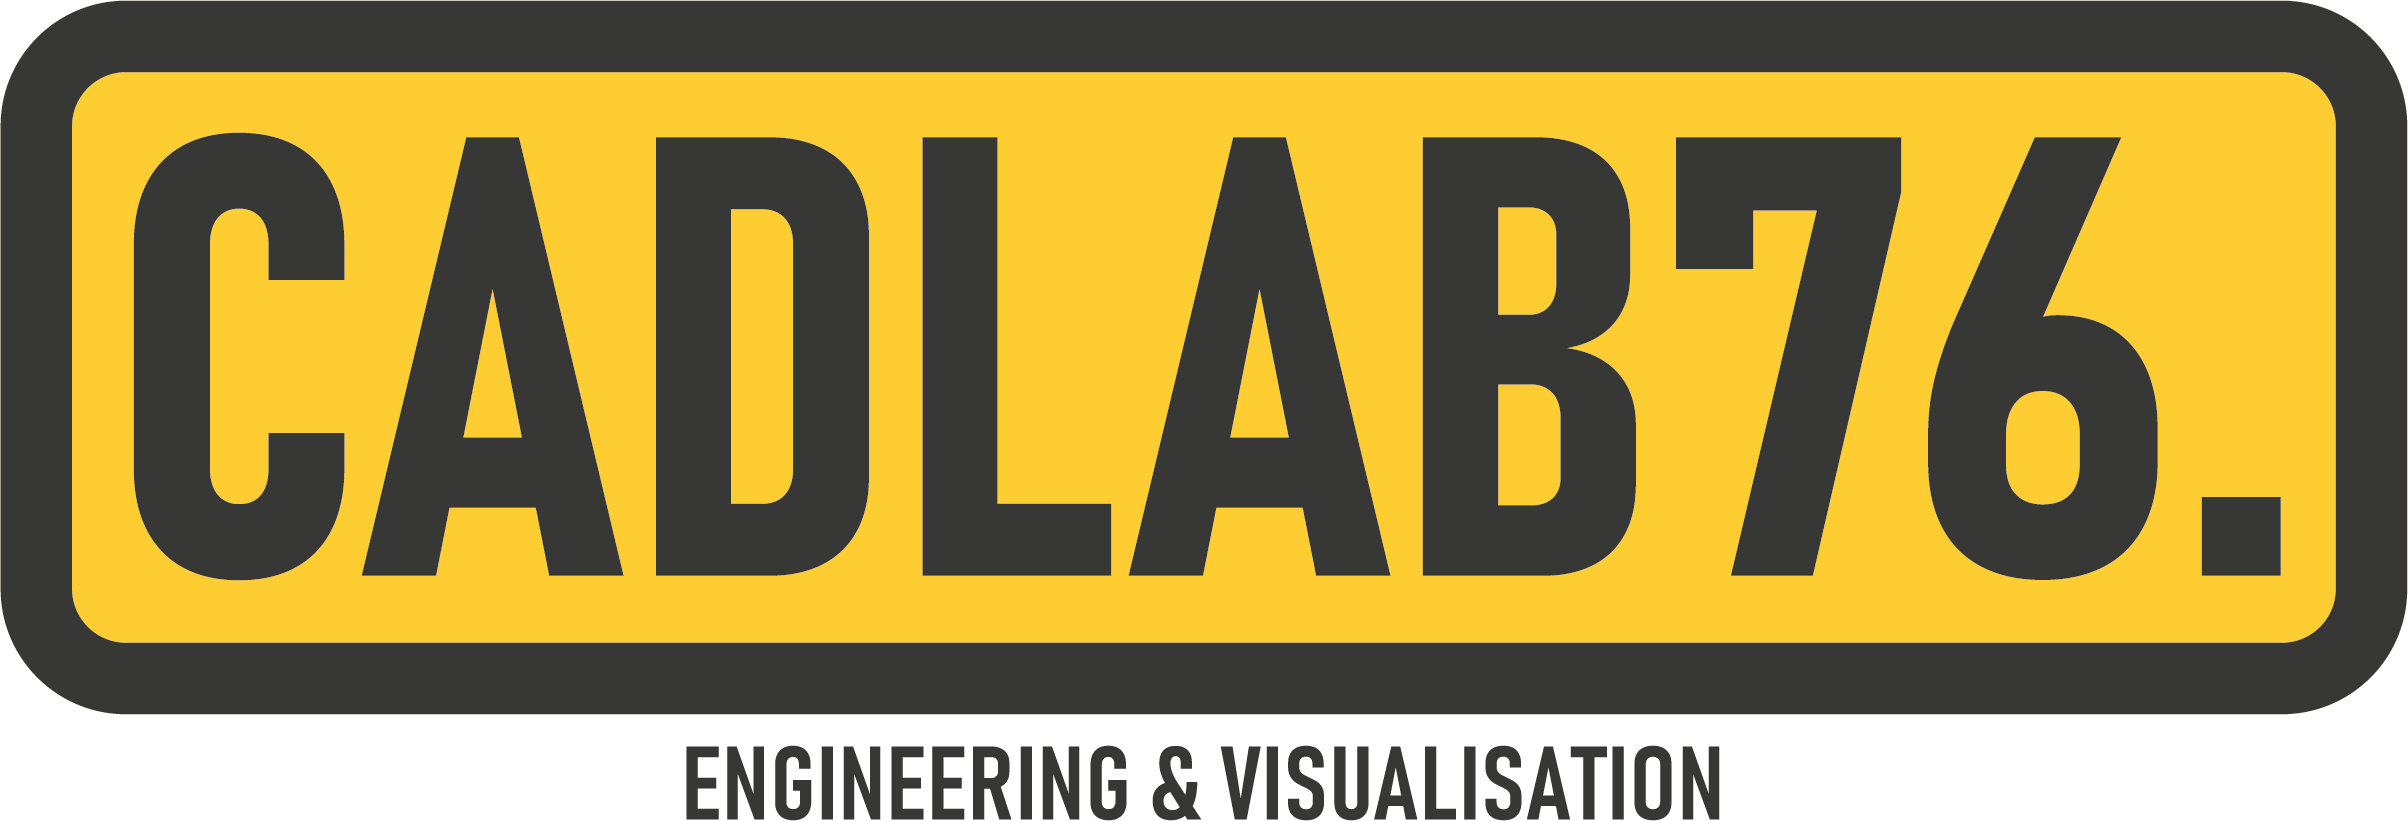 CADLAB76_Logo